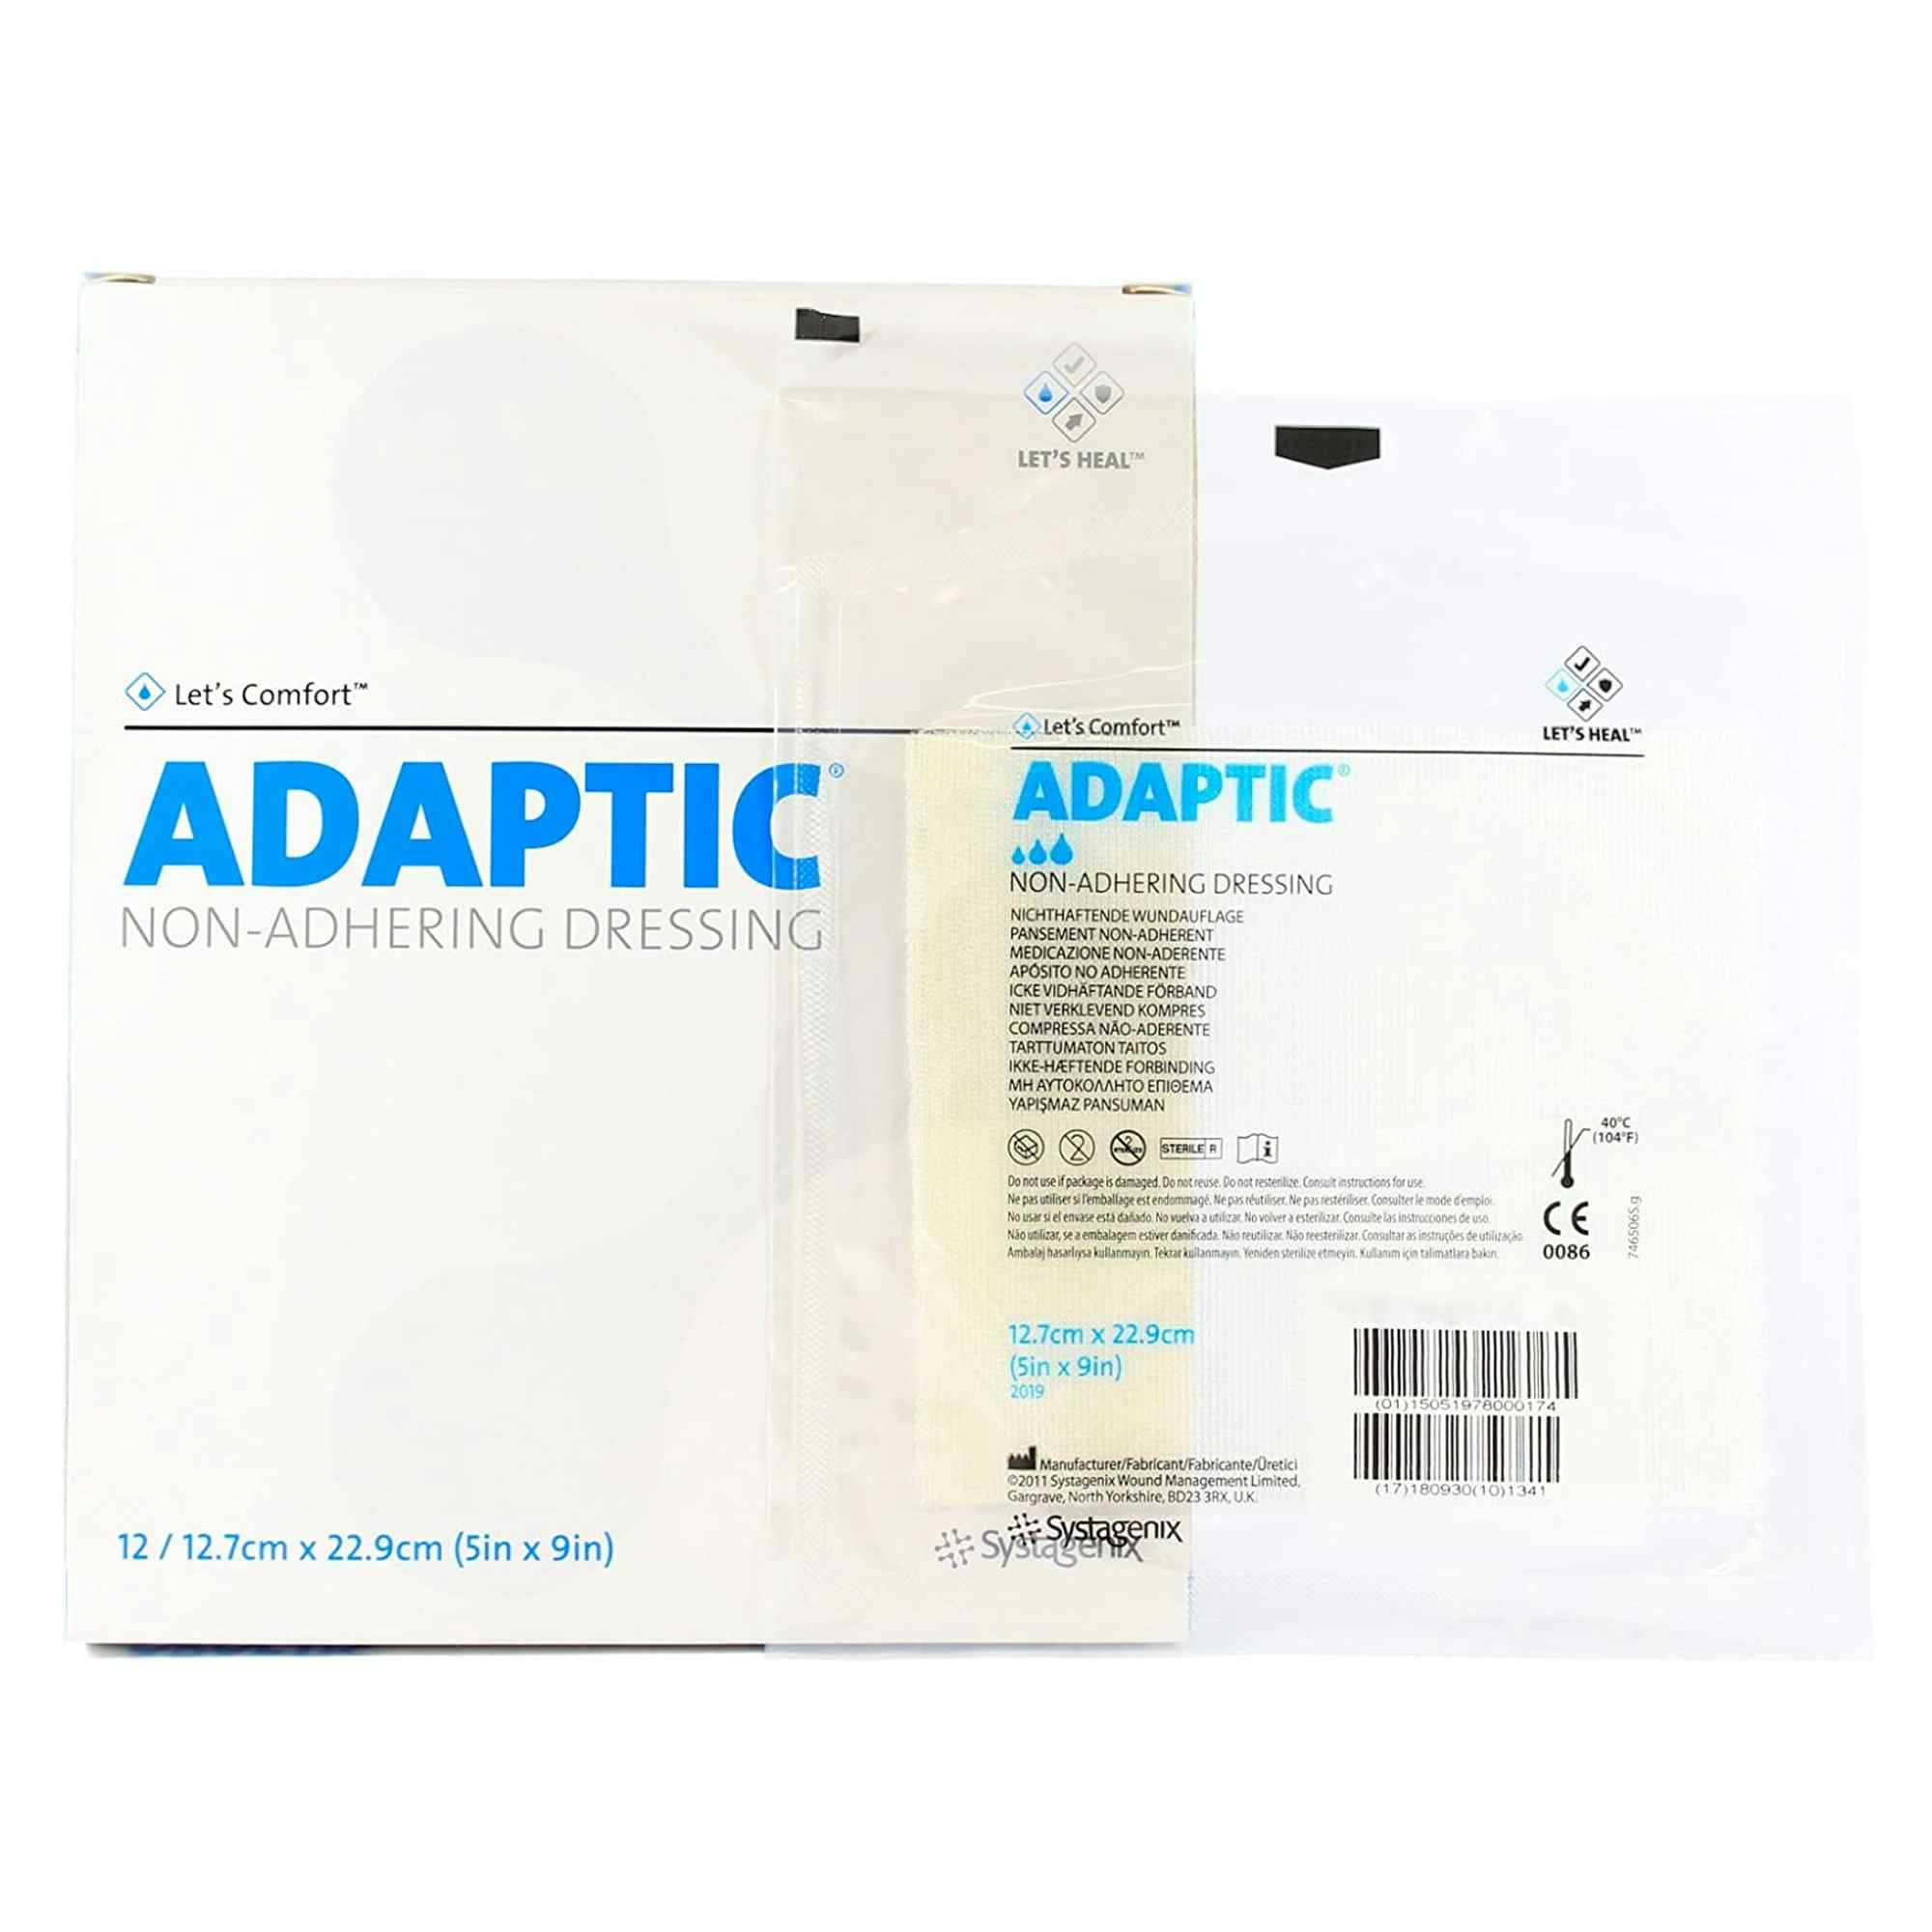 Adaptic Non-Adhering Dressing, 5 X 9", 2019, Box of 12